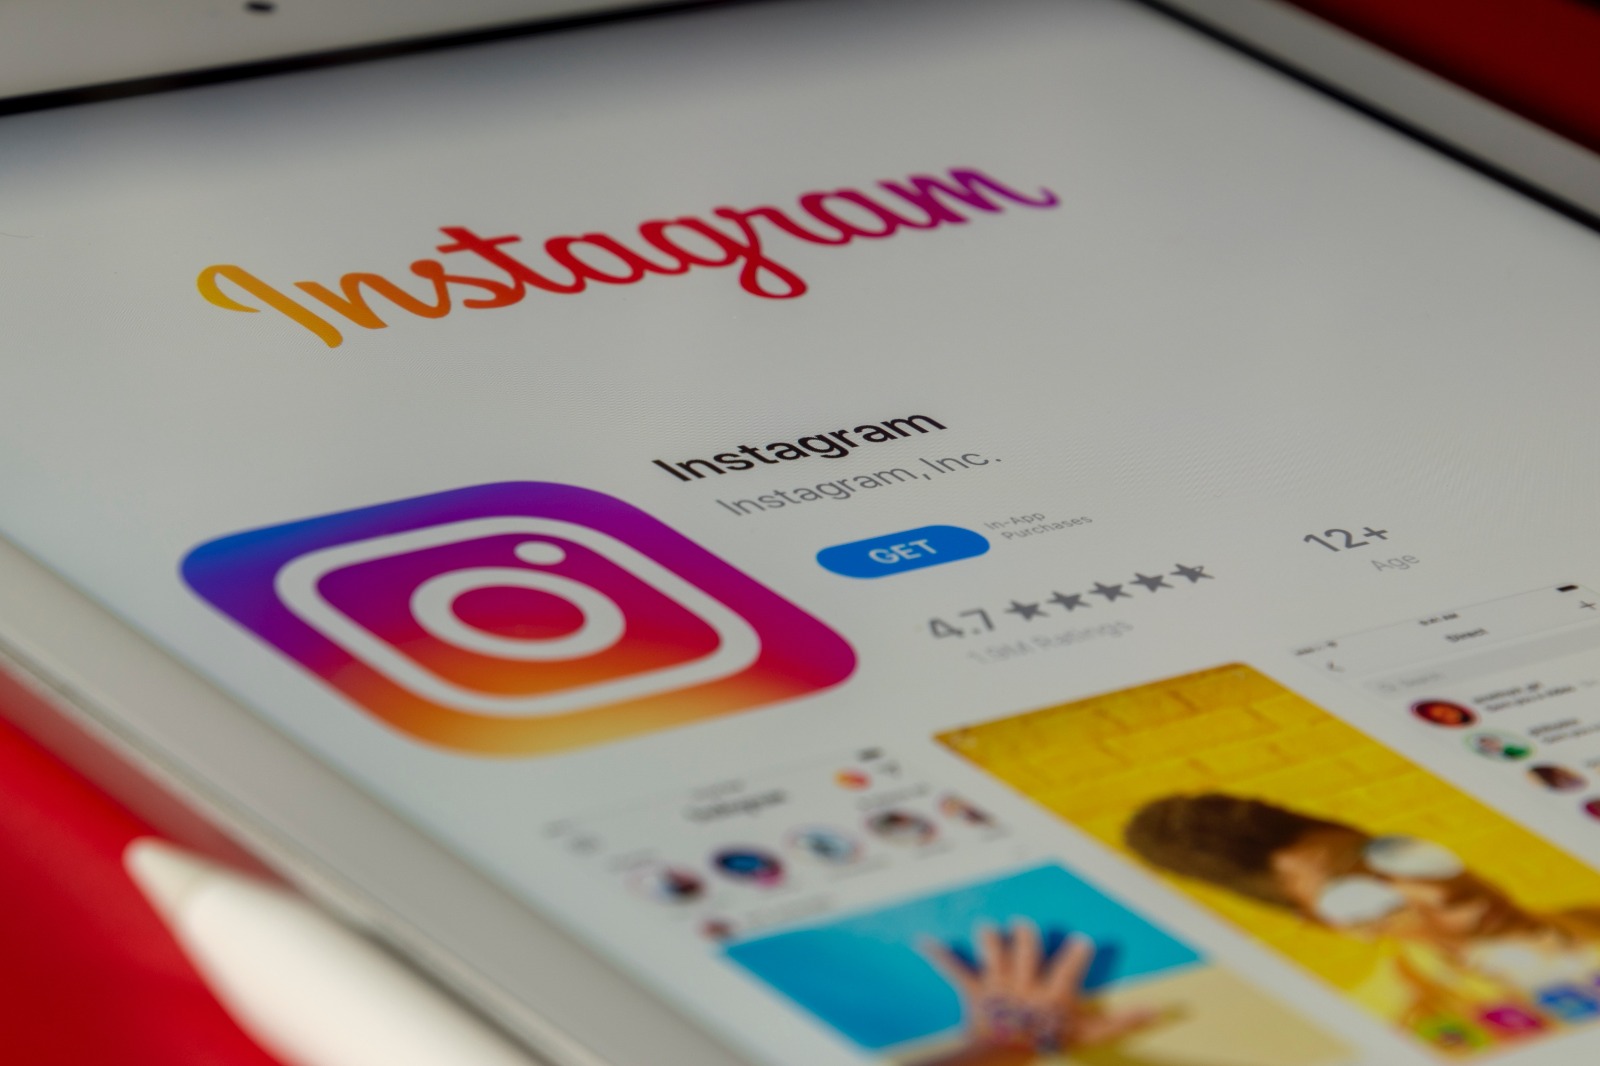 Syarat dan Cara Beli Centang Biru Instagram, Tertarik Membeli?